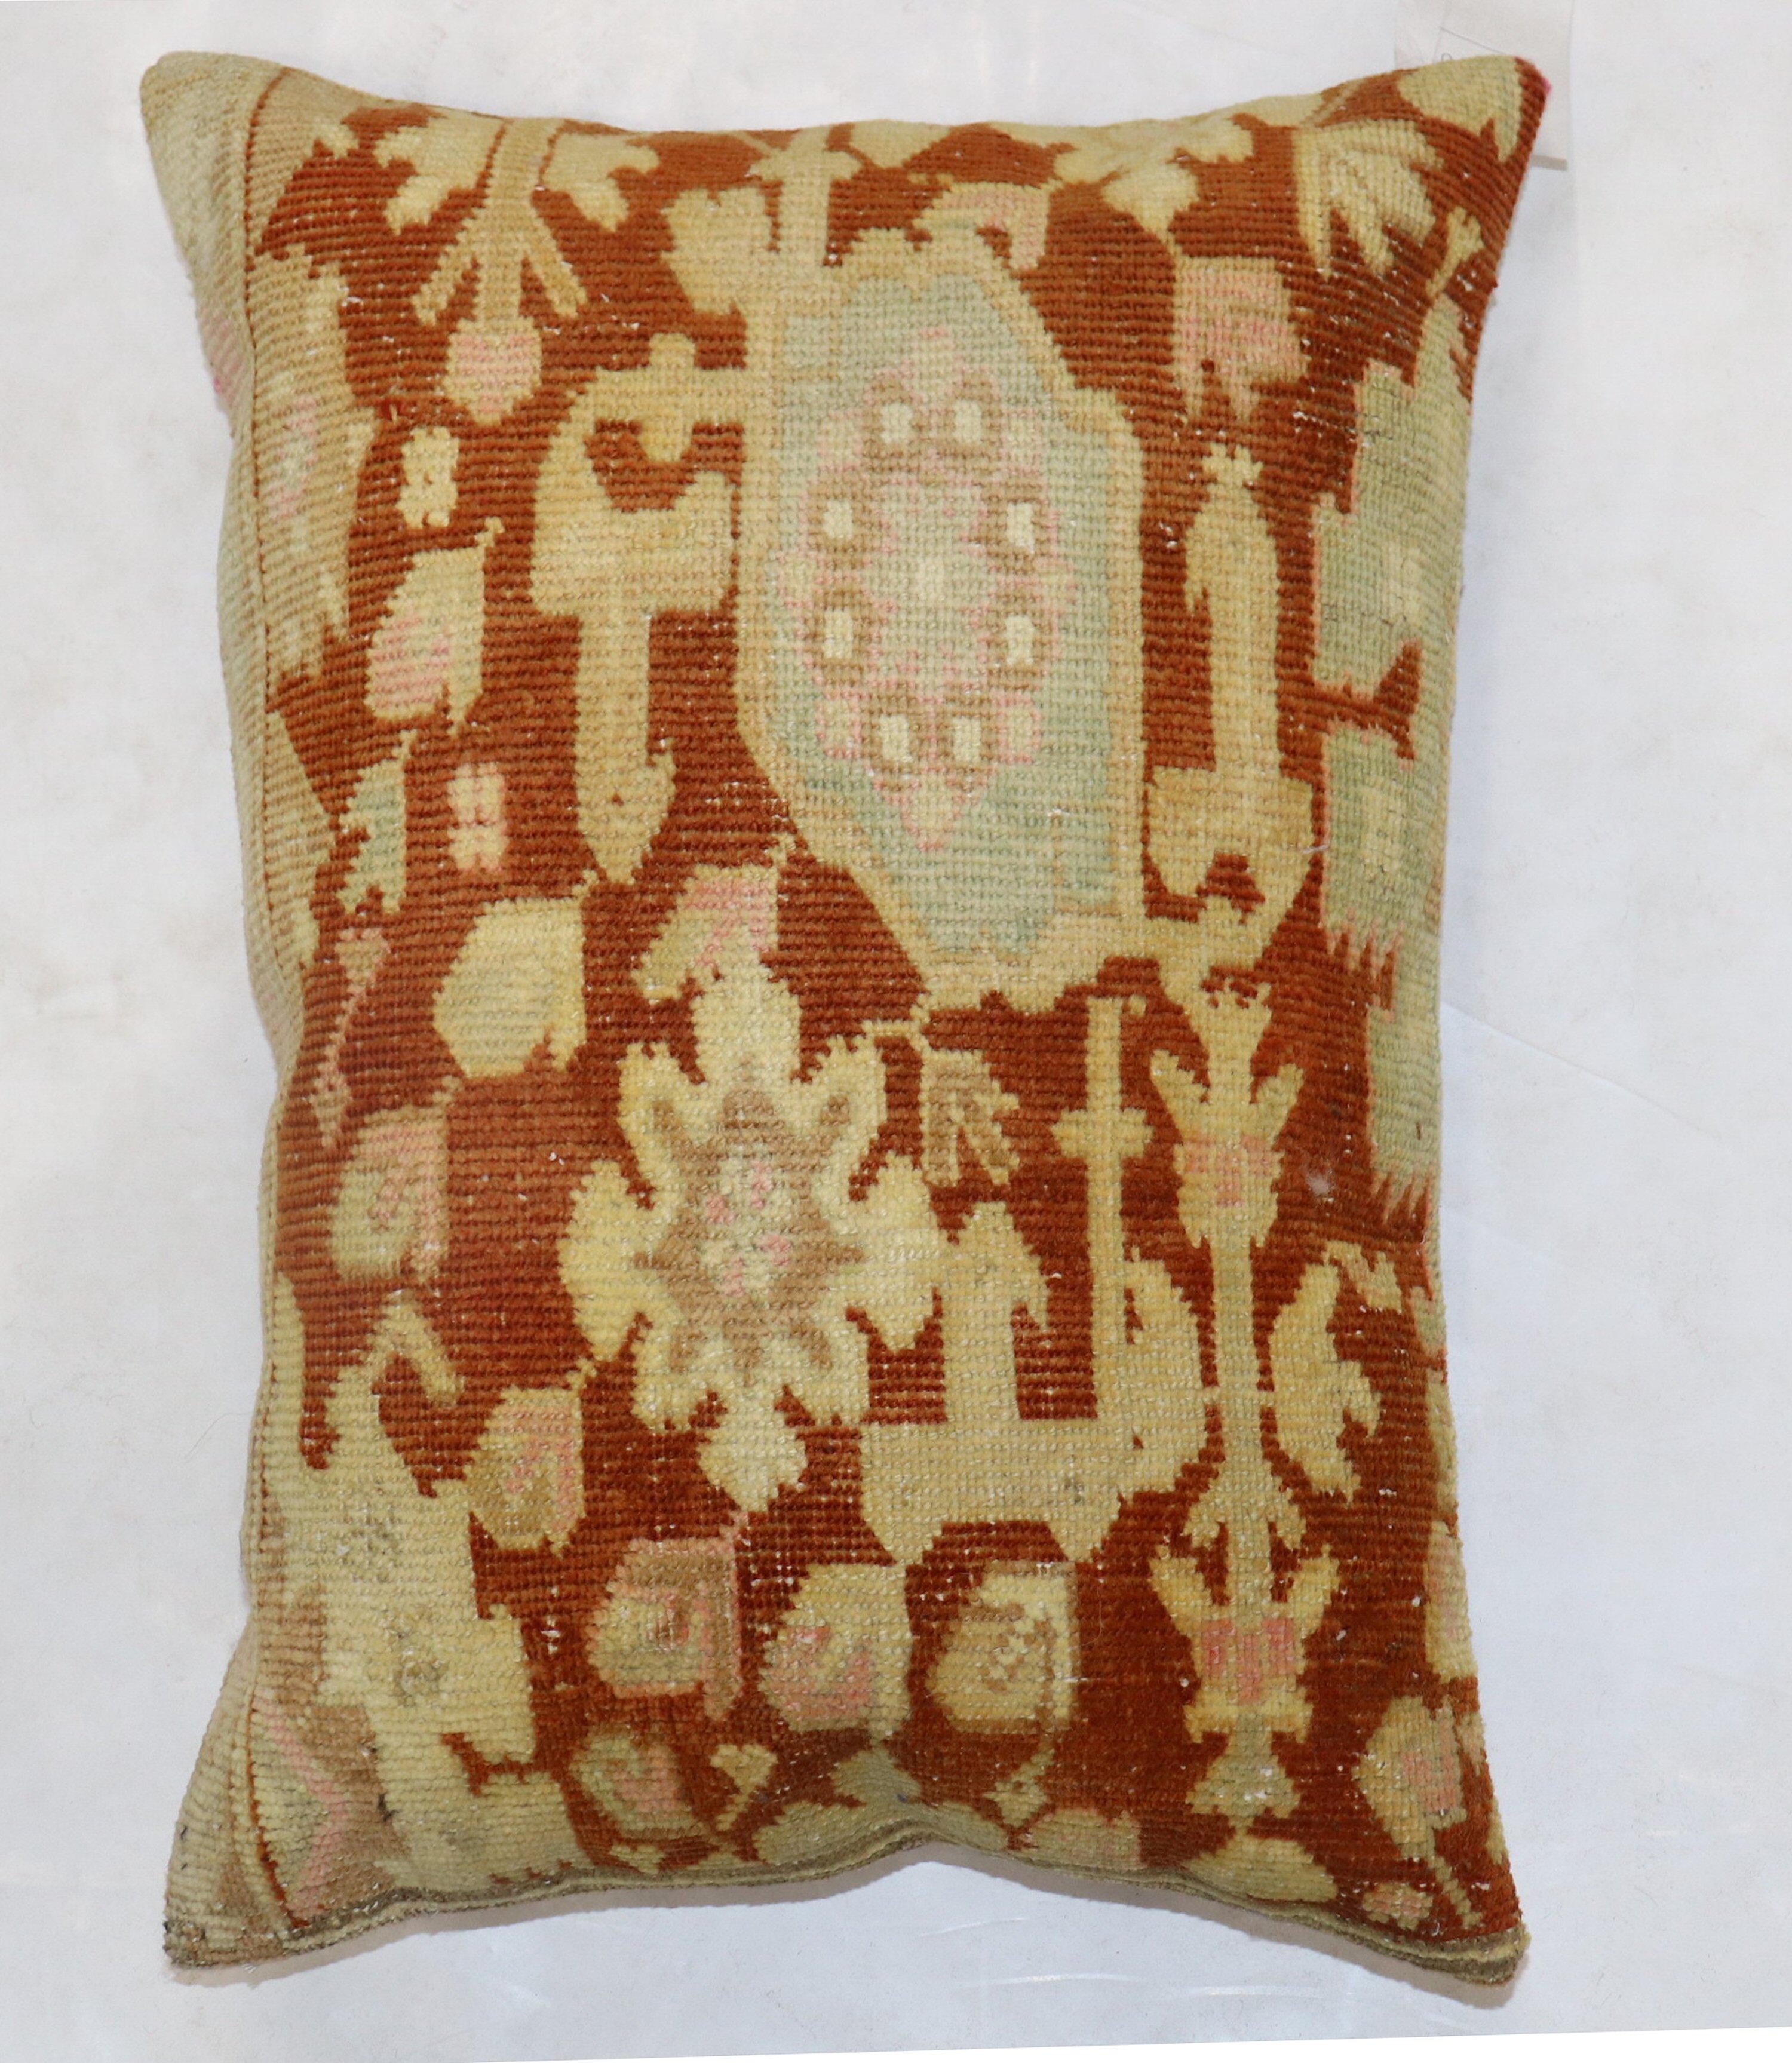 Kissen aus einem antiken indischen Agra-Teppich aus dem frühen 20. Jahrhundert. Mit Reißverschluss und Polyfill-Einlage

Maße: 19'' x 27''.